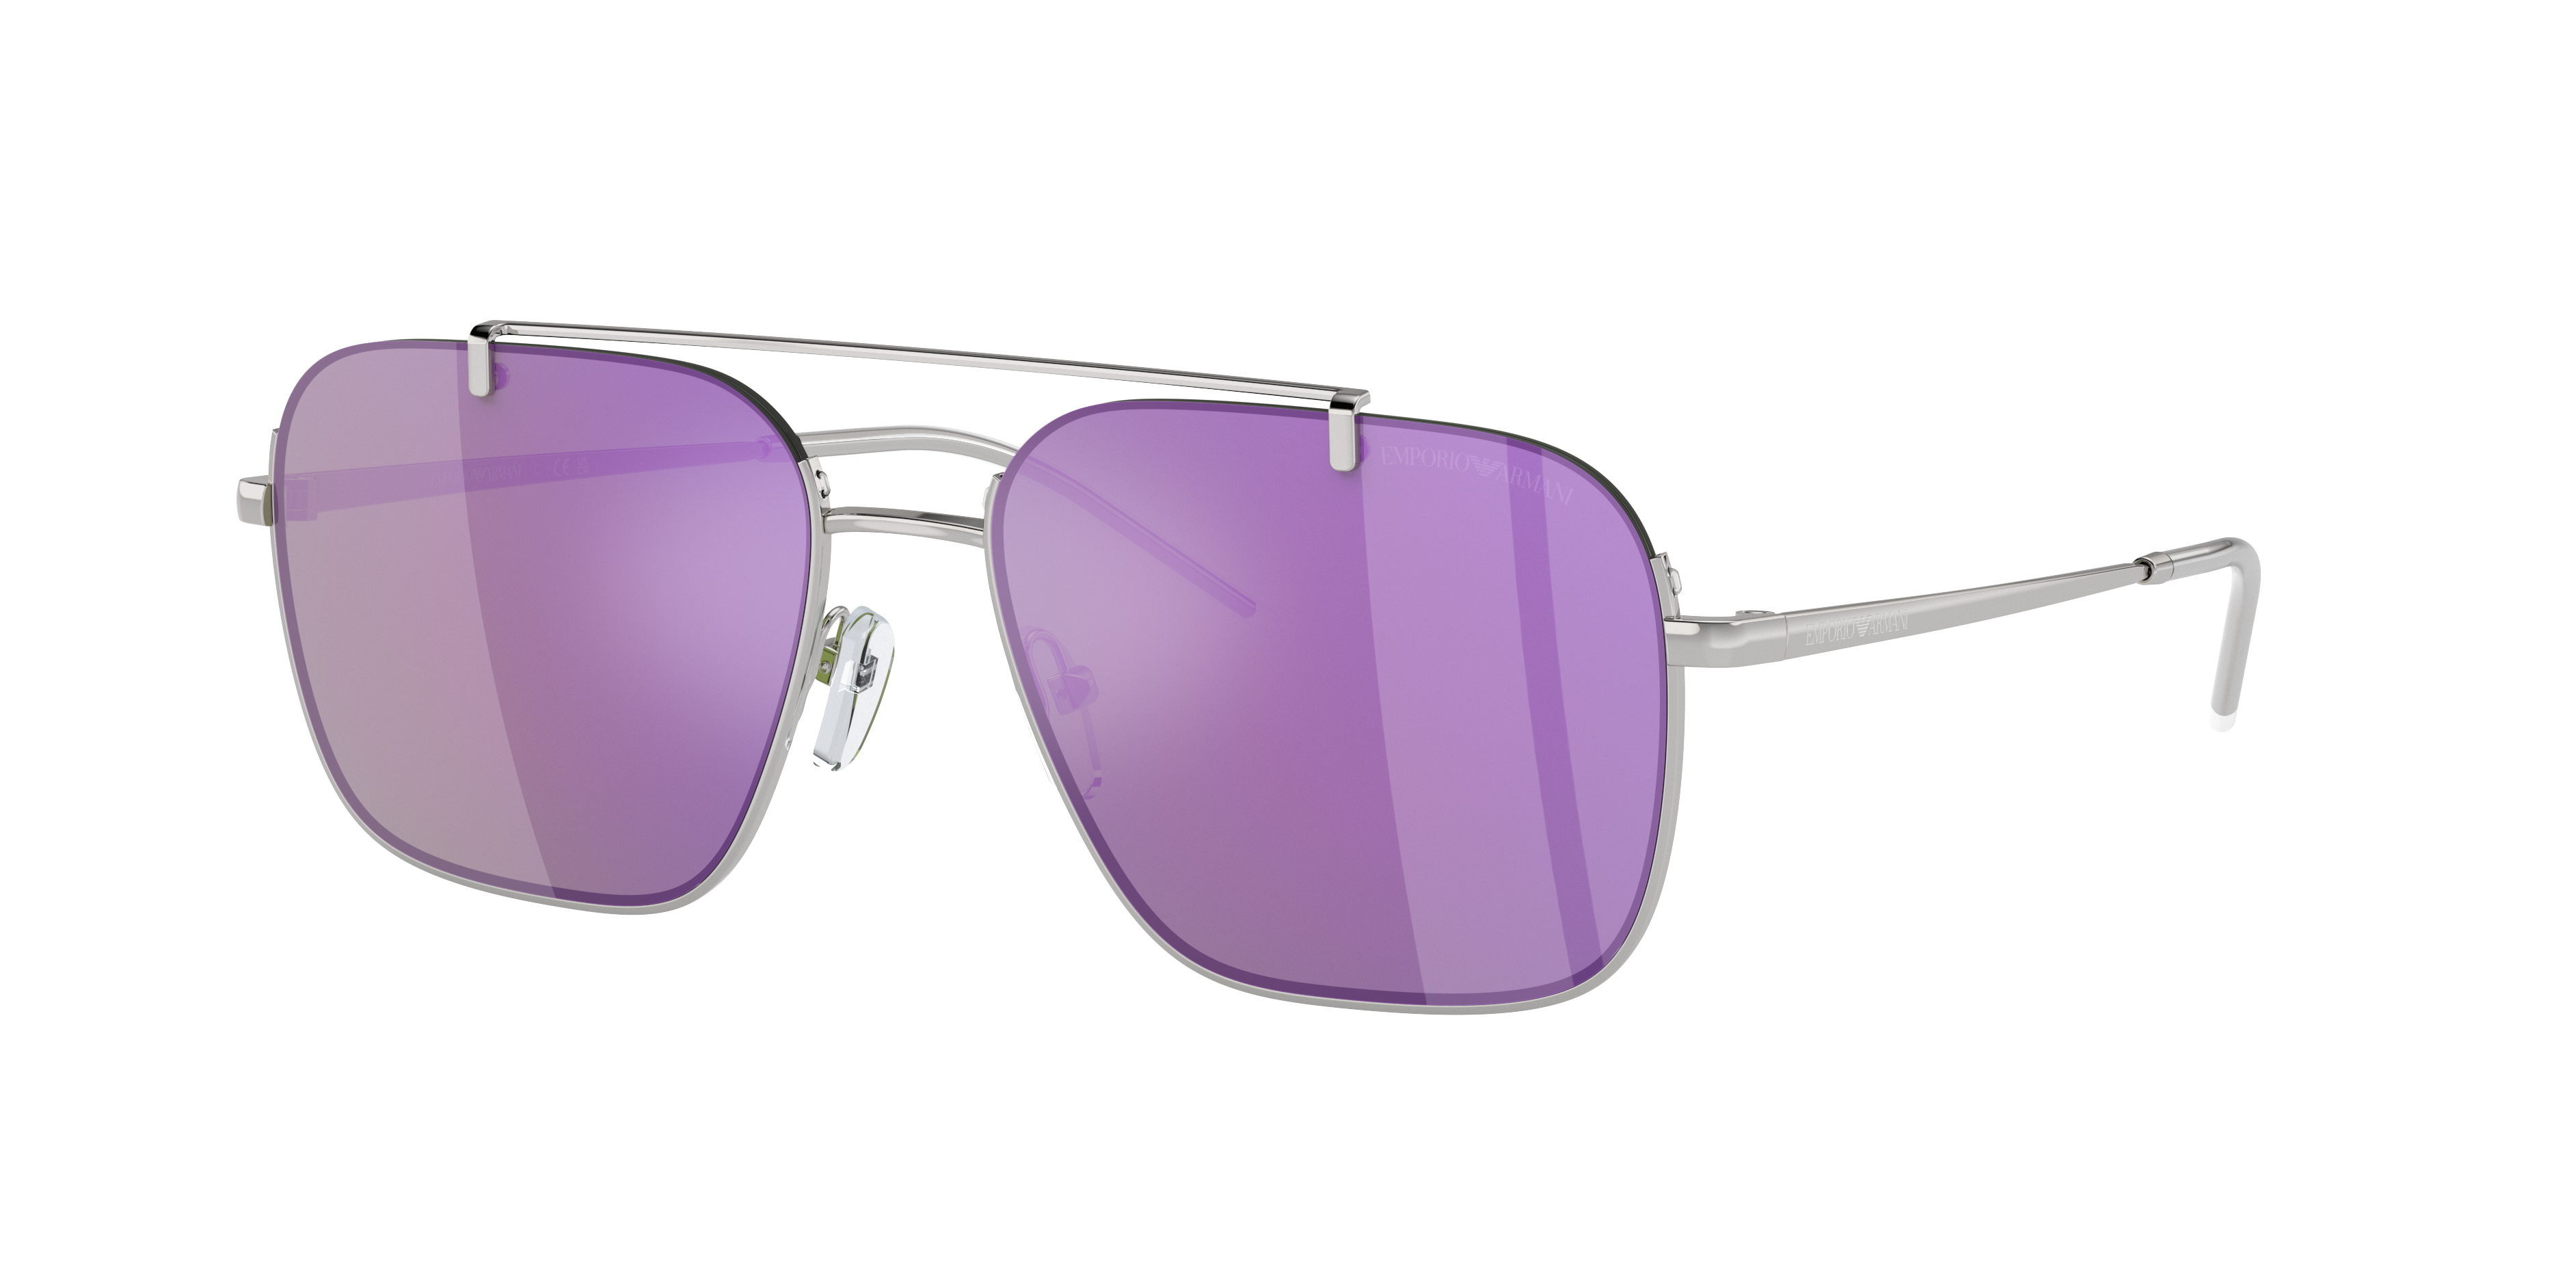 Emporio Armani Man Sunglasses Ea2150 In Grey Mirror Violet